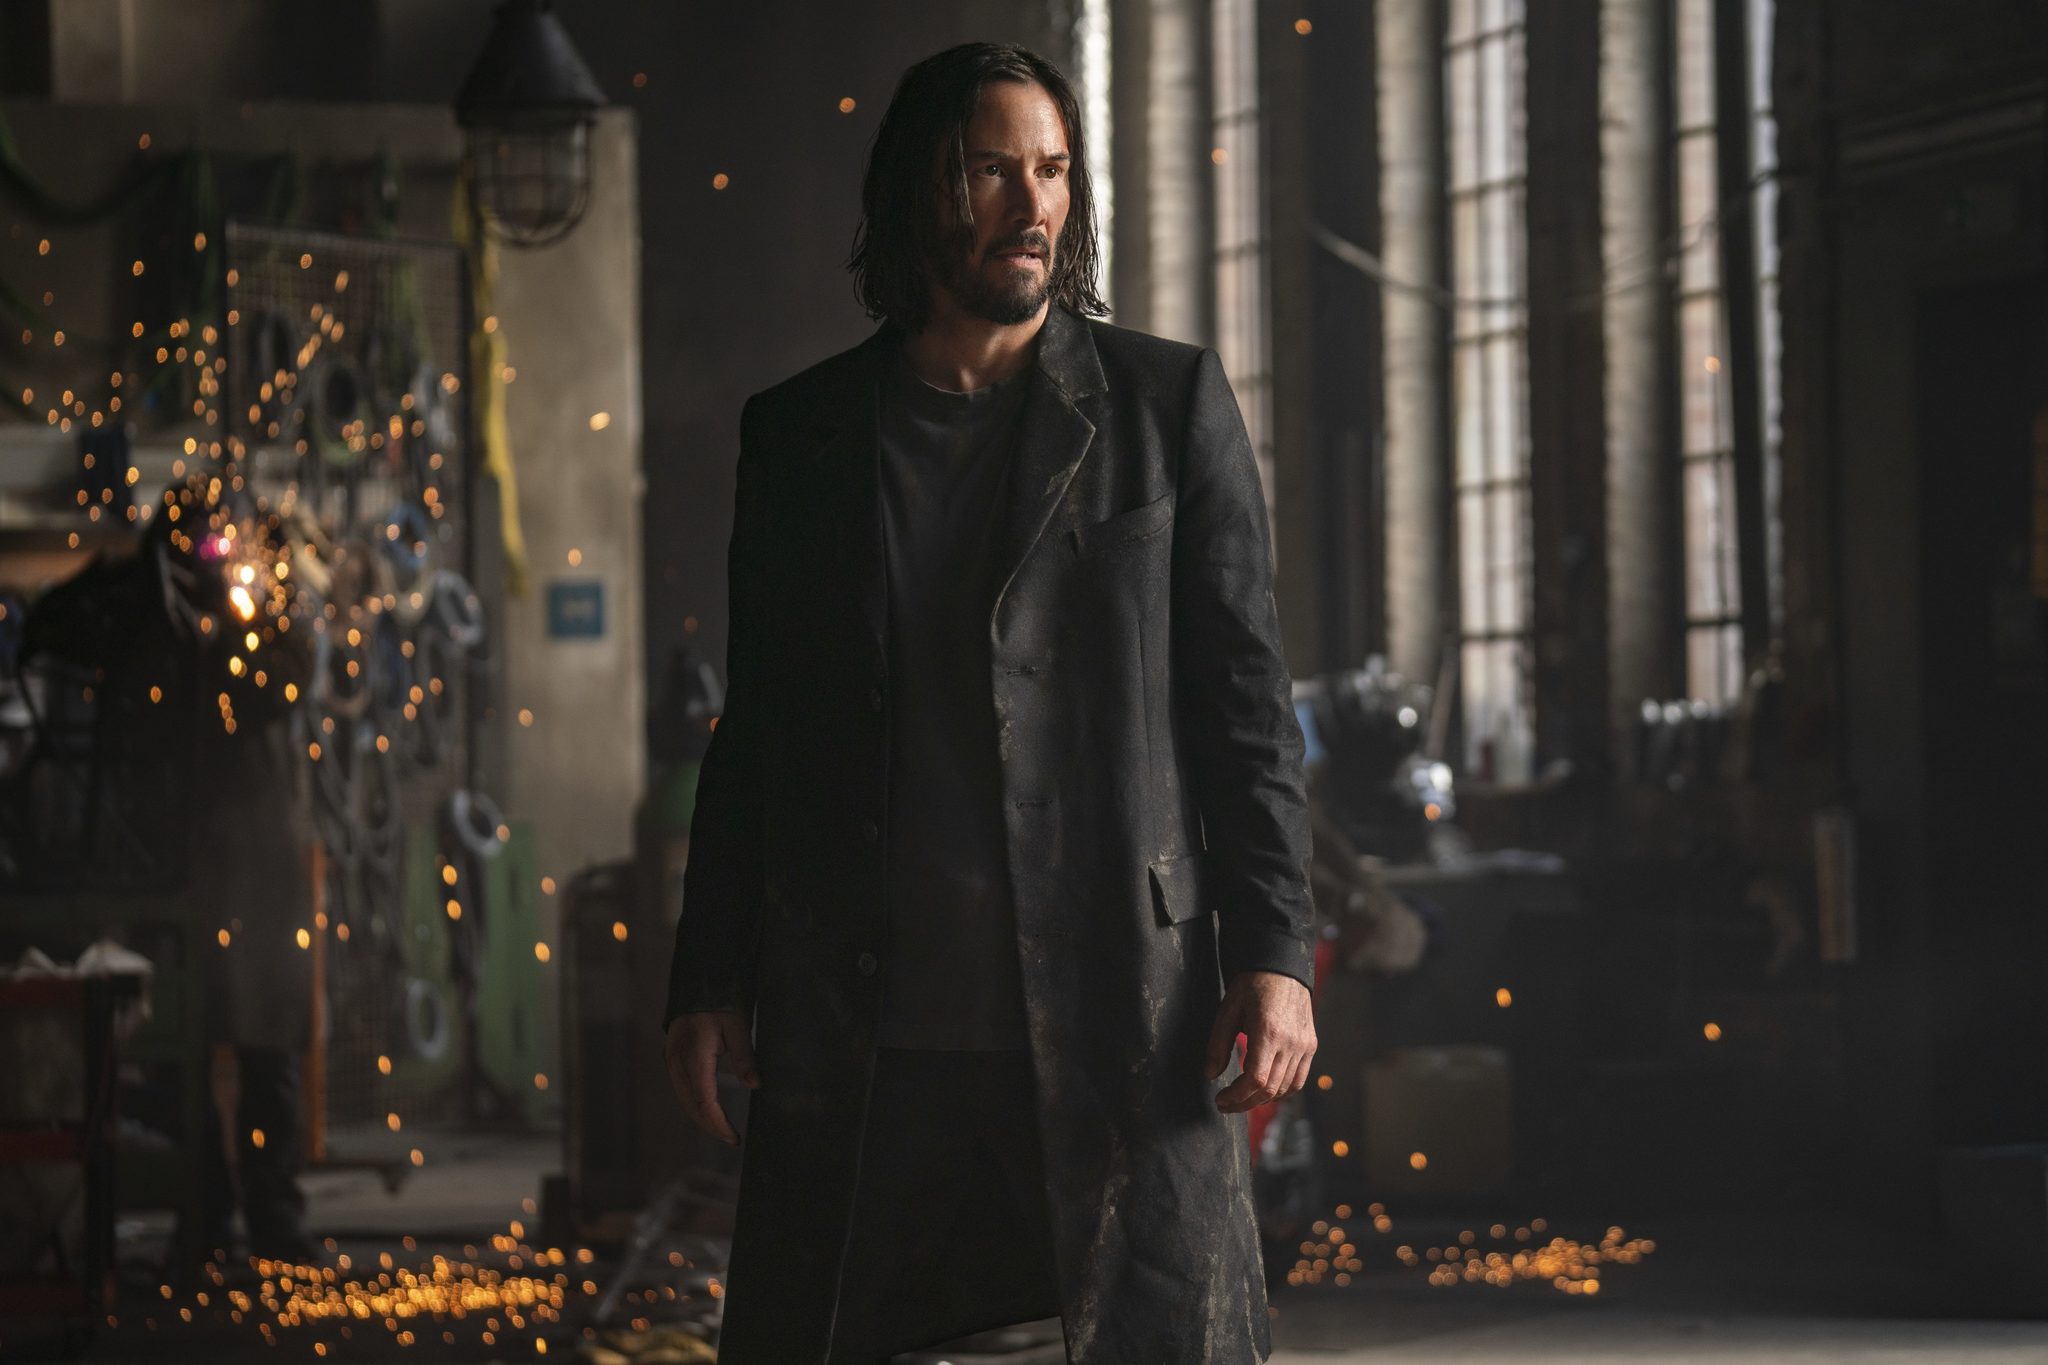 Keanu Reeves en Matrix Resurrections